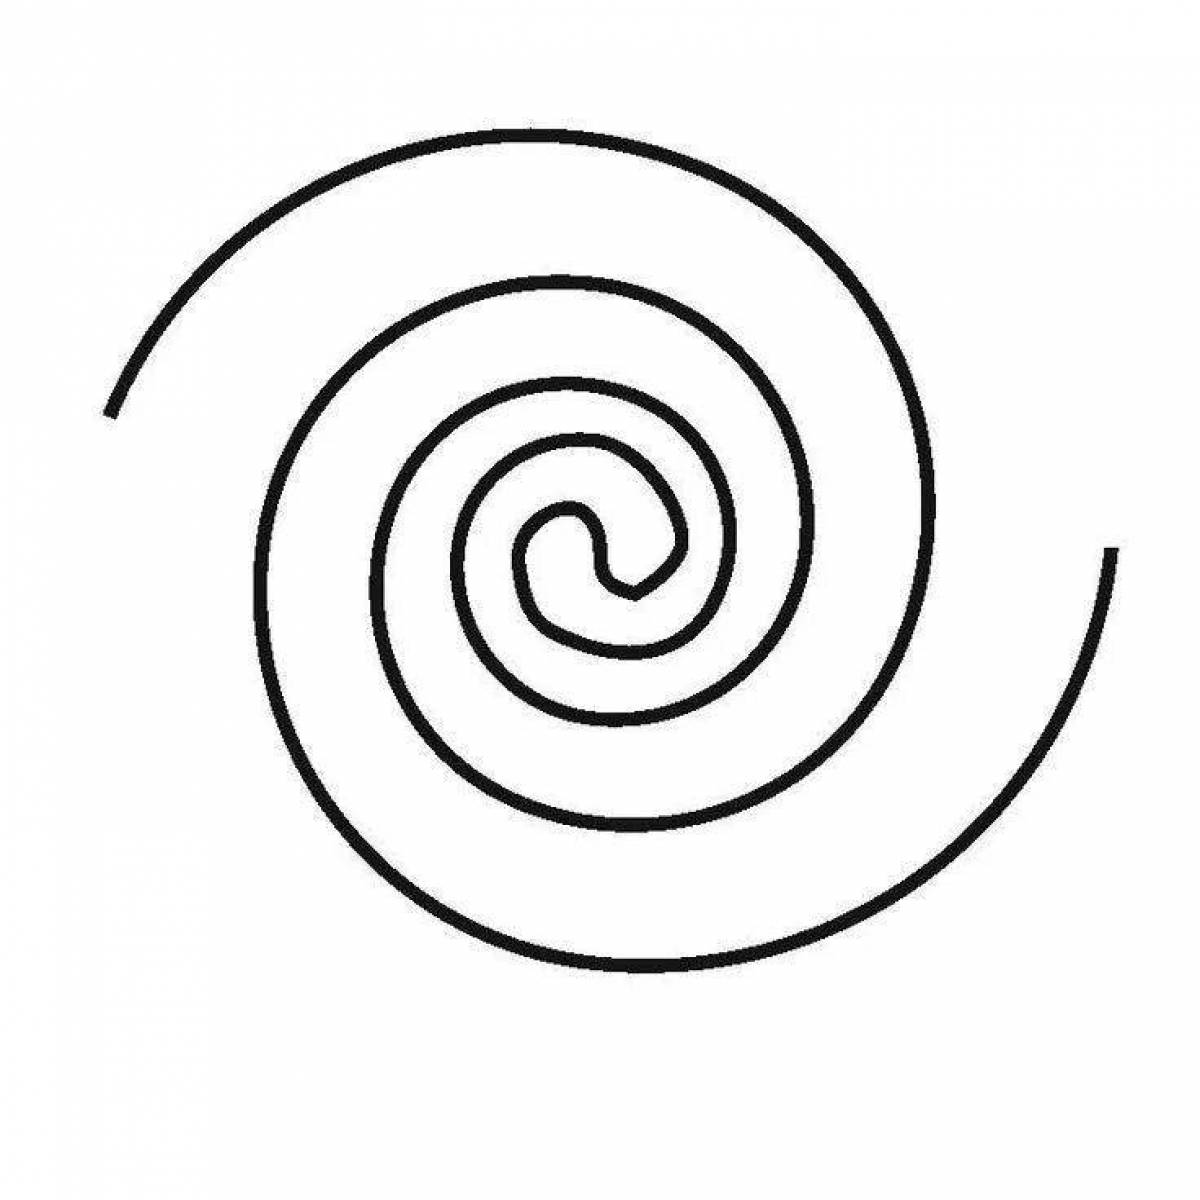 Bright spiral portrait